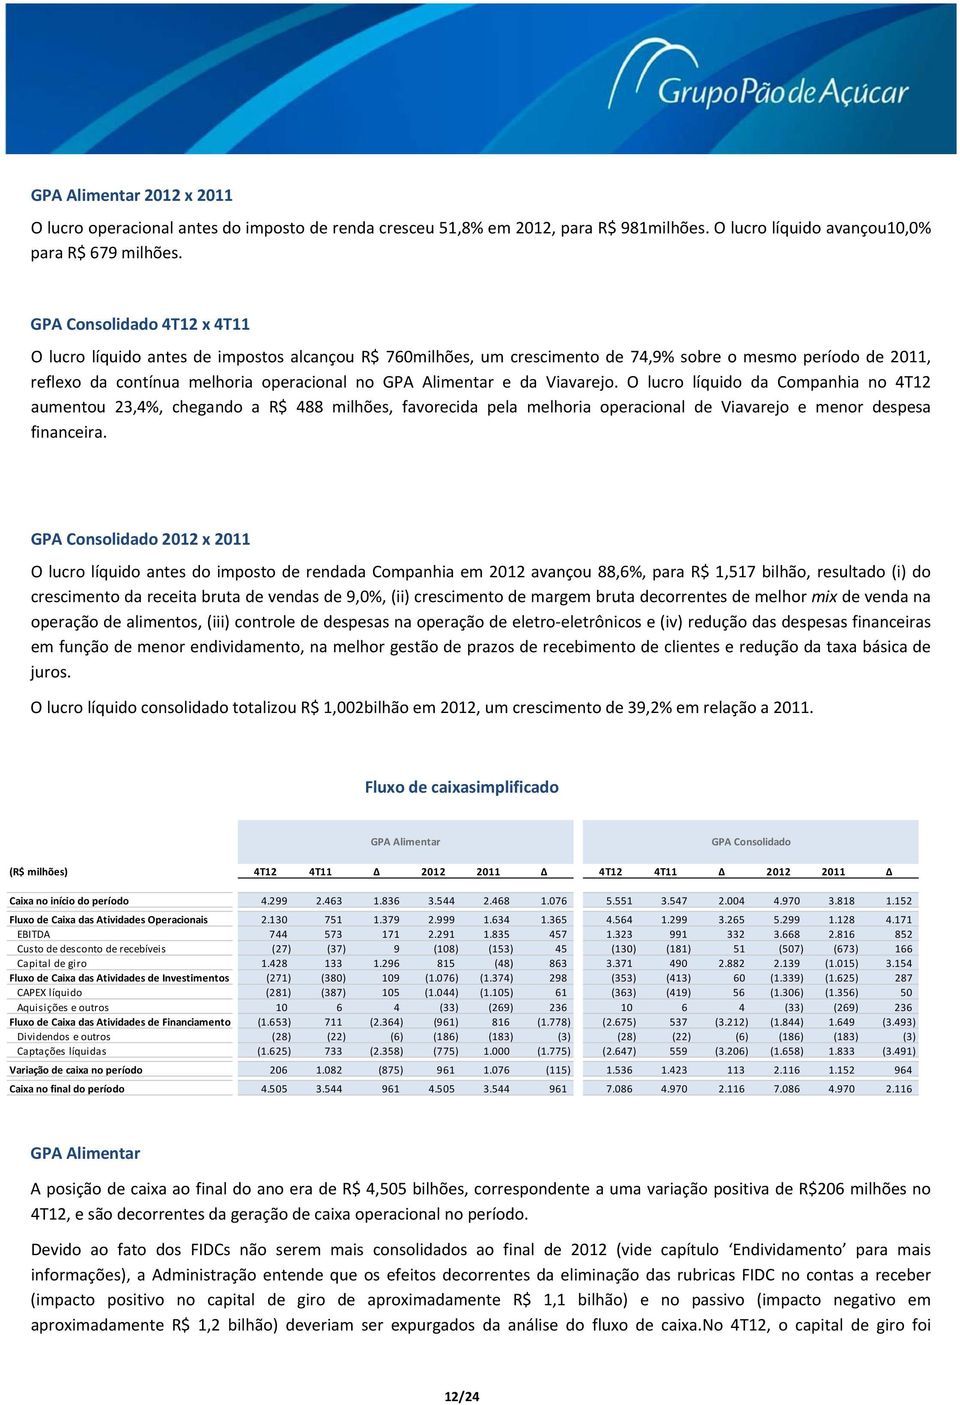 O lucro líquido da Companhia no 4T12 aumentou 23,4%, chegando a R$ 488 milhões, favorecida pela melhoria operacional de Viavarejo e menor despesa financeira.